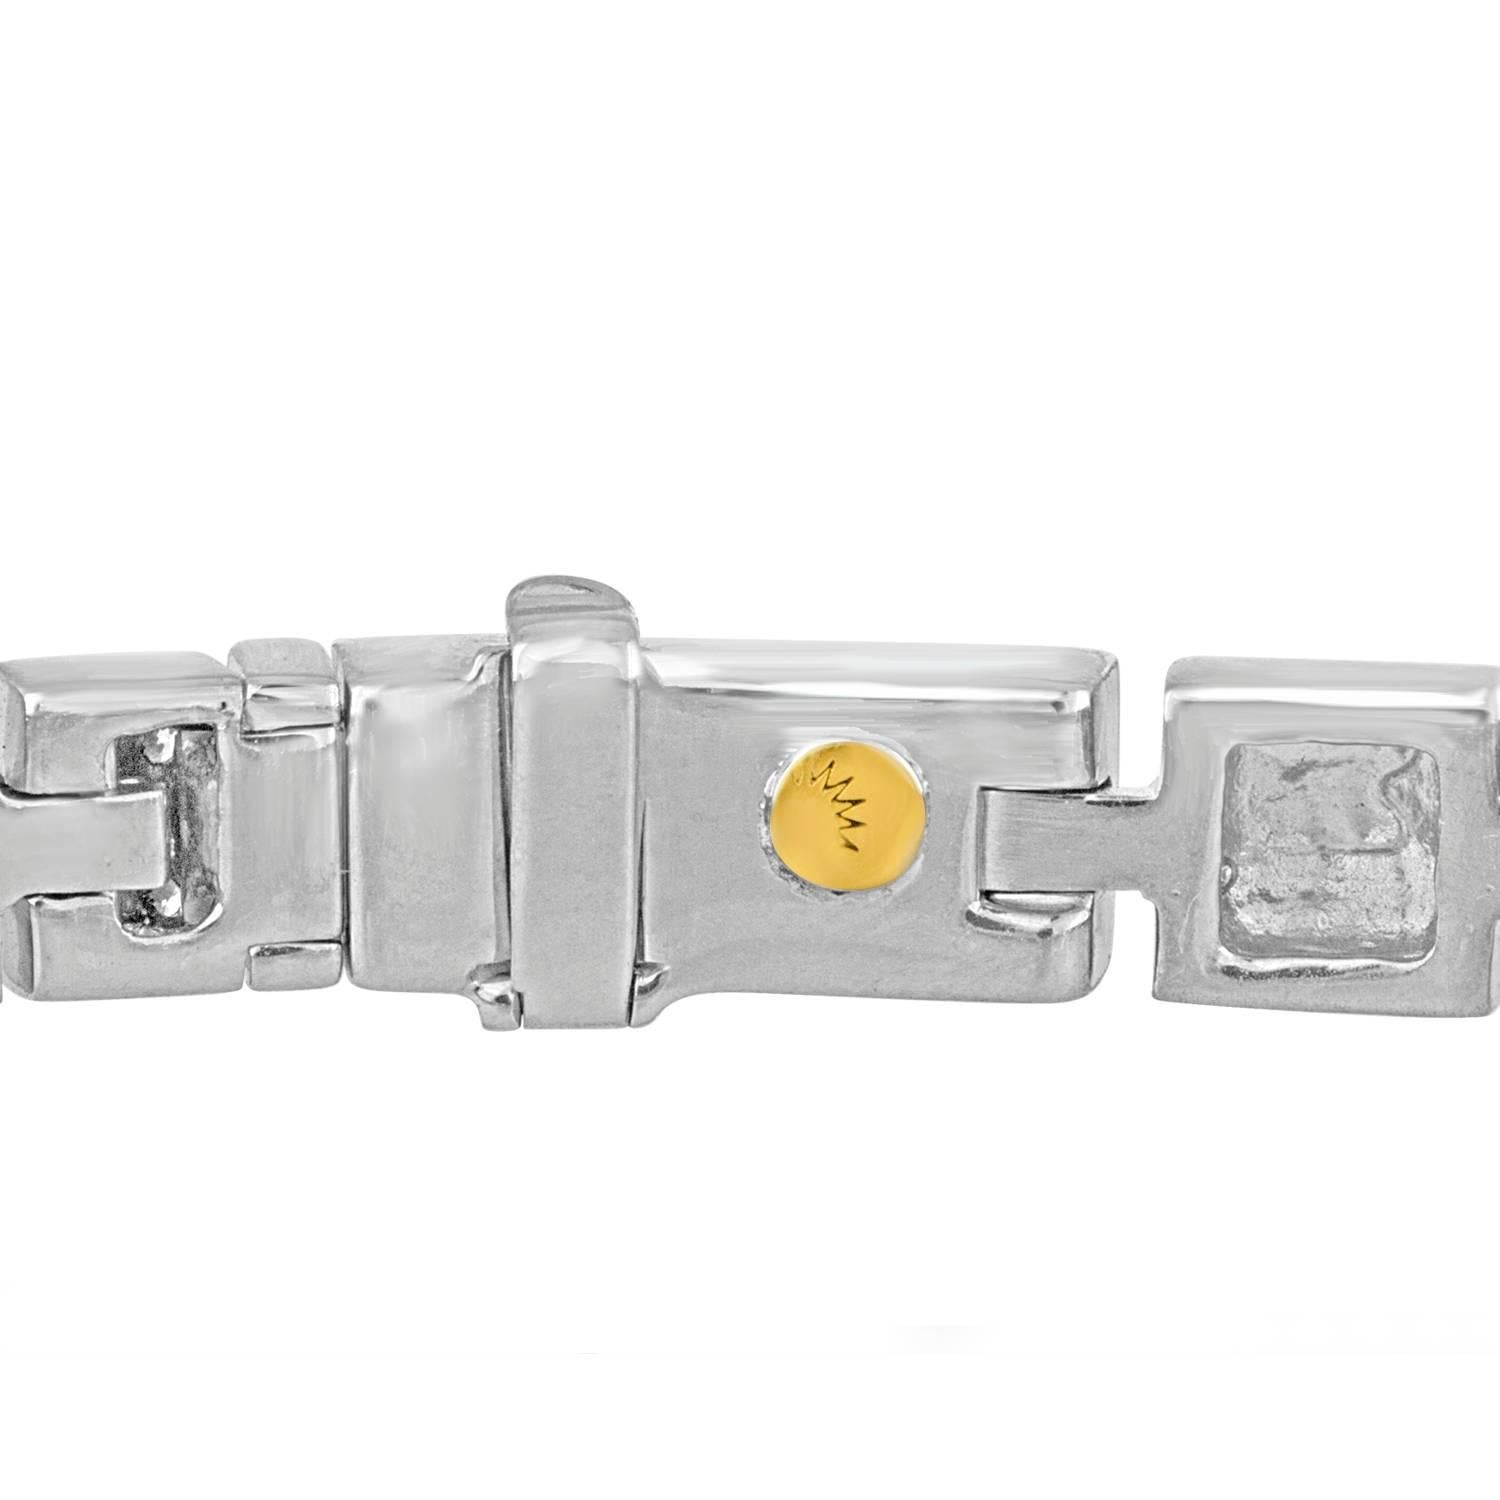 Bracelet de tennis du designer Luca Carati.
Le bracelet est en or blanc 18K finition satinée et finition polie.
Il y a 3,75 carats de diamants F VVS.
Le bracelet mesure 7 pouces de long et 0,25 pouce de large.
Le bracelet pèse 36,3 grammes.